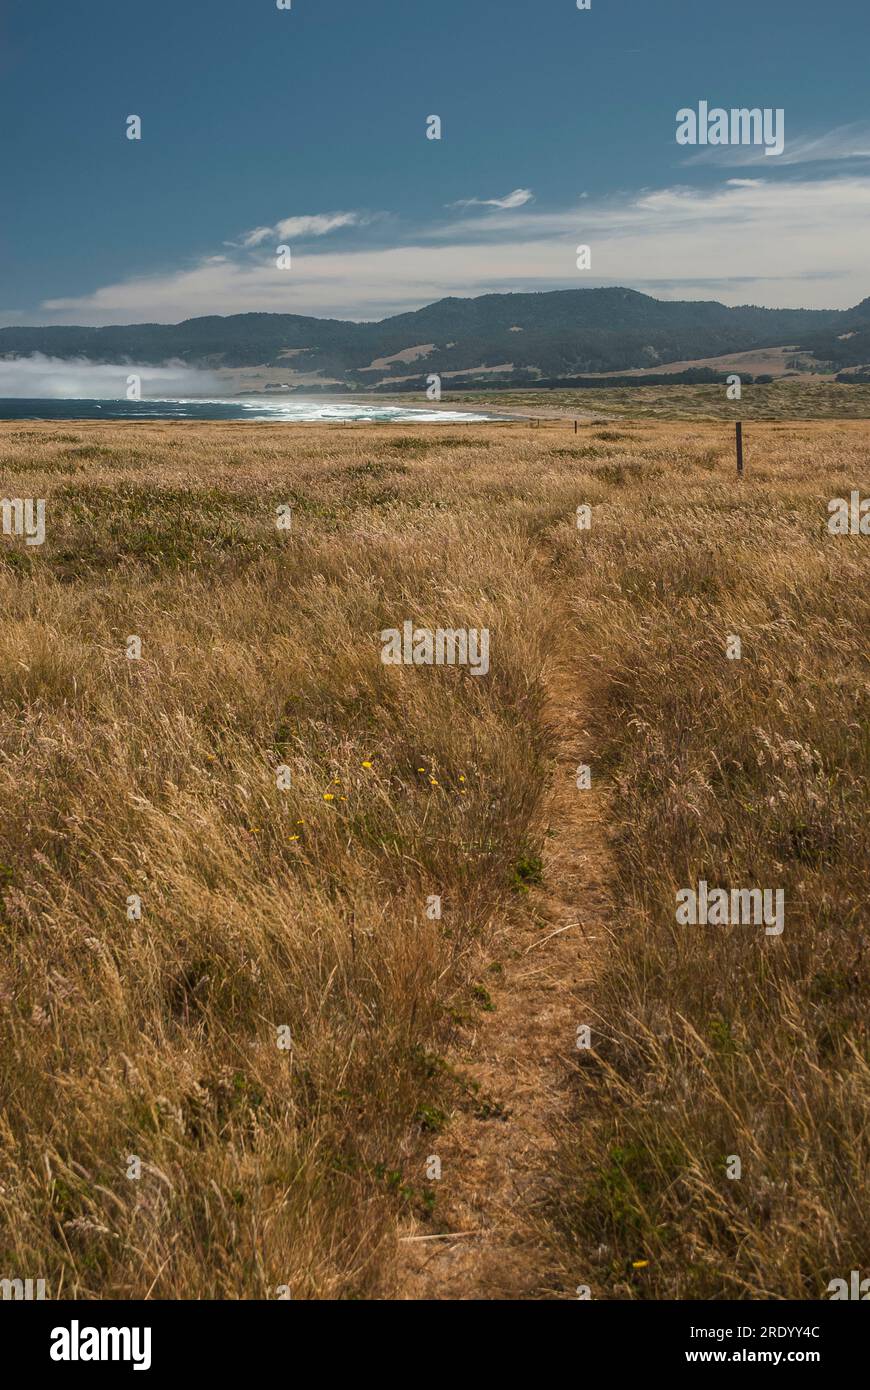 Ein Pfad schlängelt sich durch ein grasbewachsenes Feld in Richtung eines leeren Strandes Stockfoto